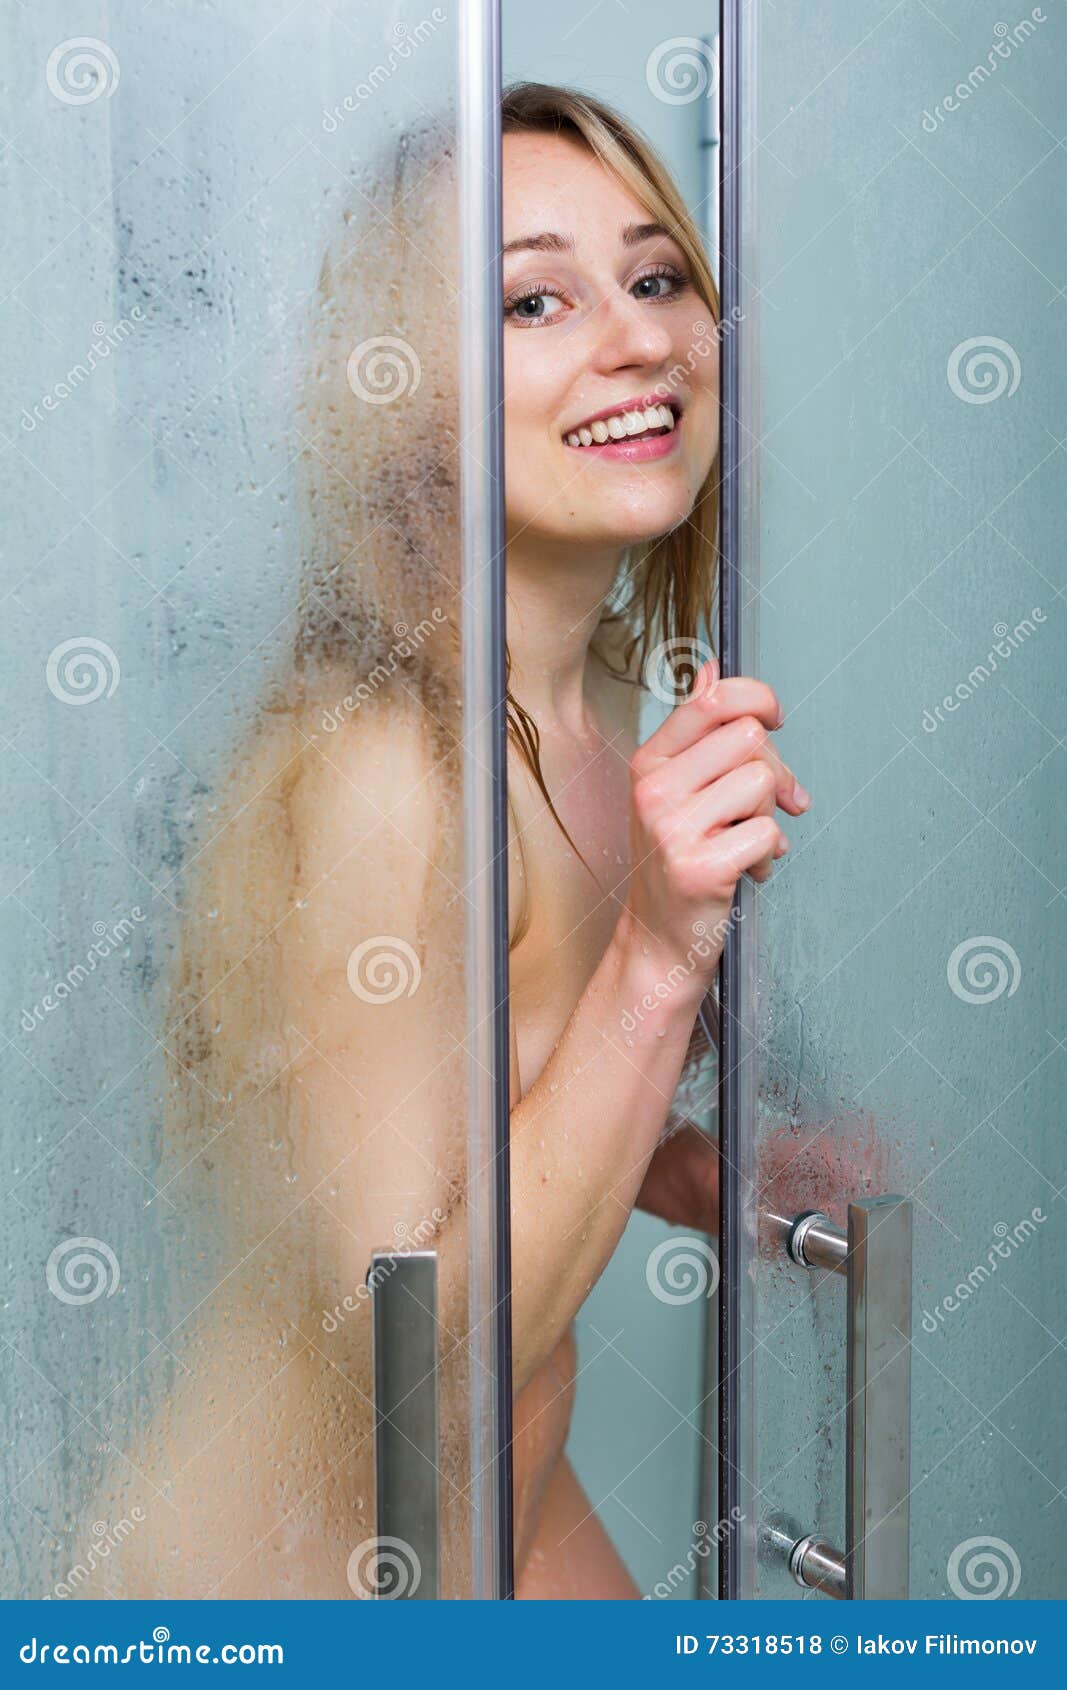 Showering naked women